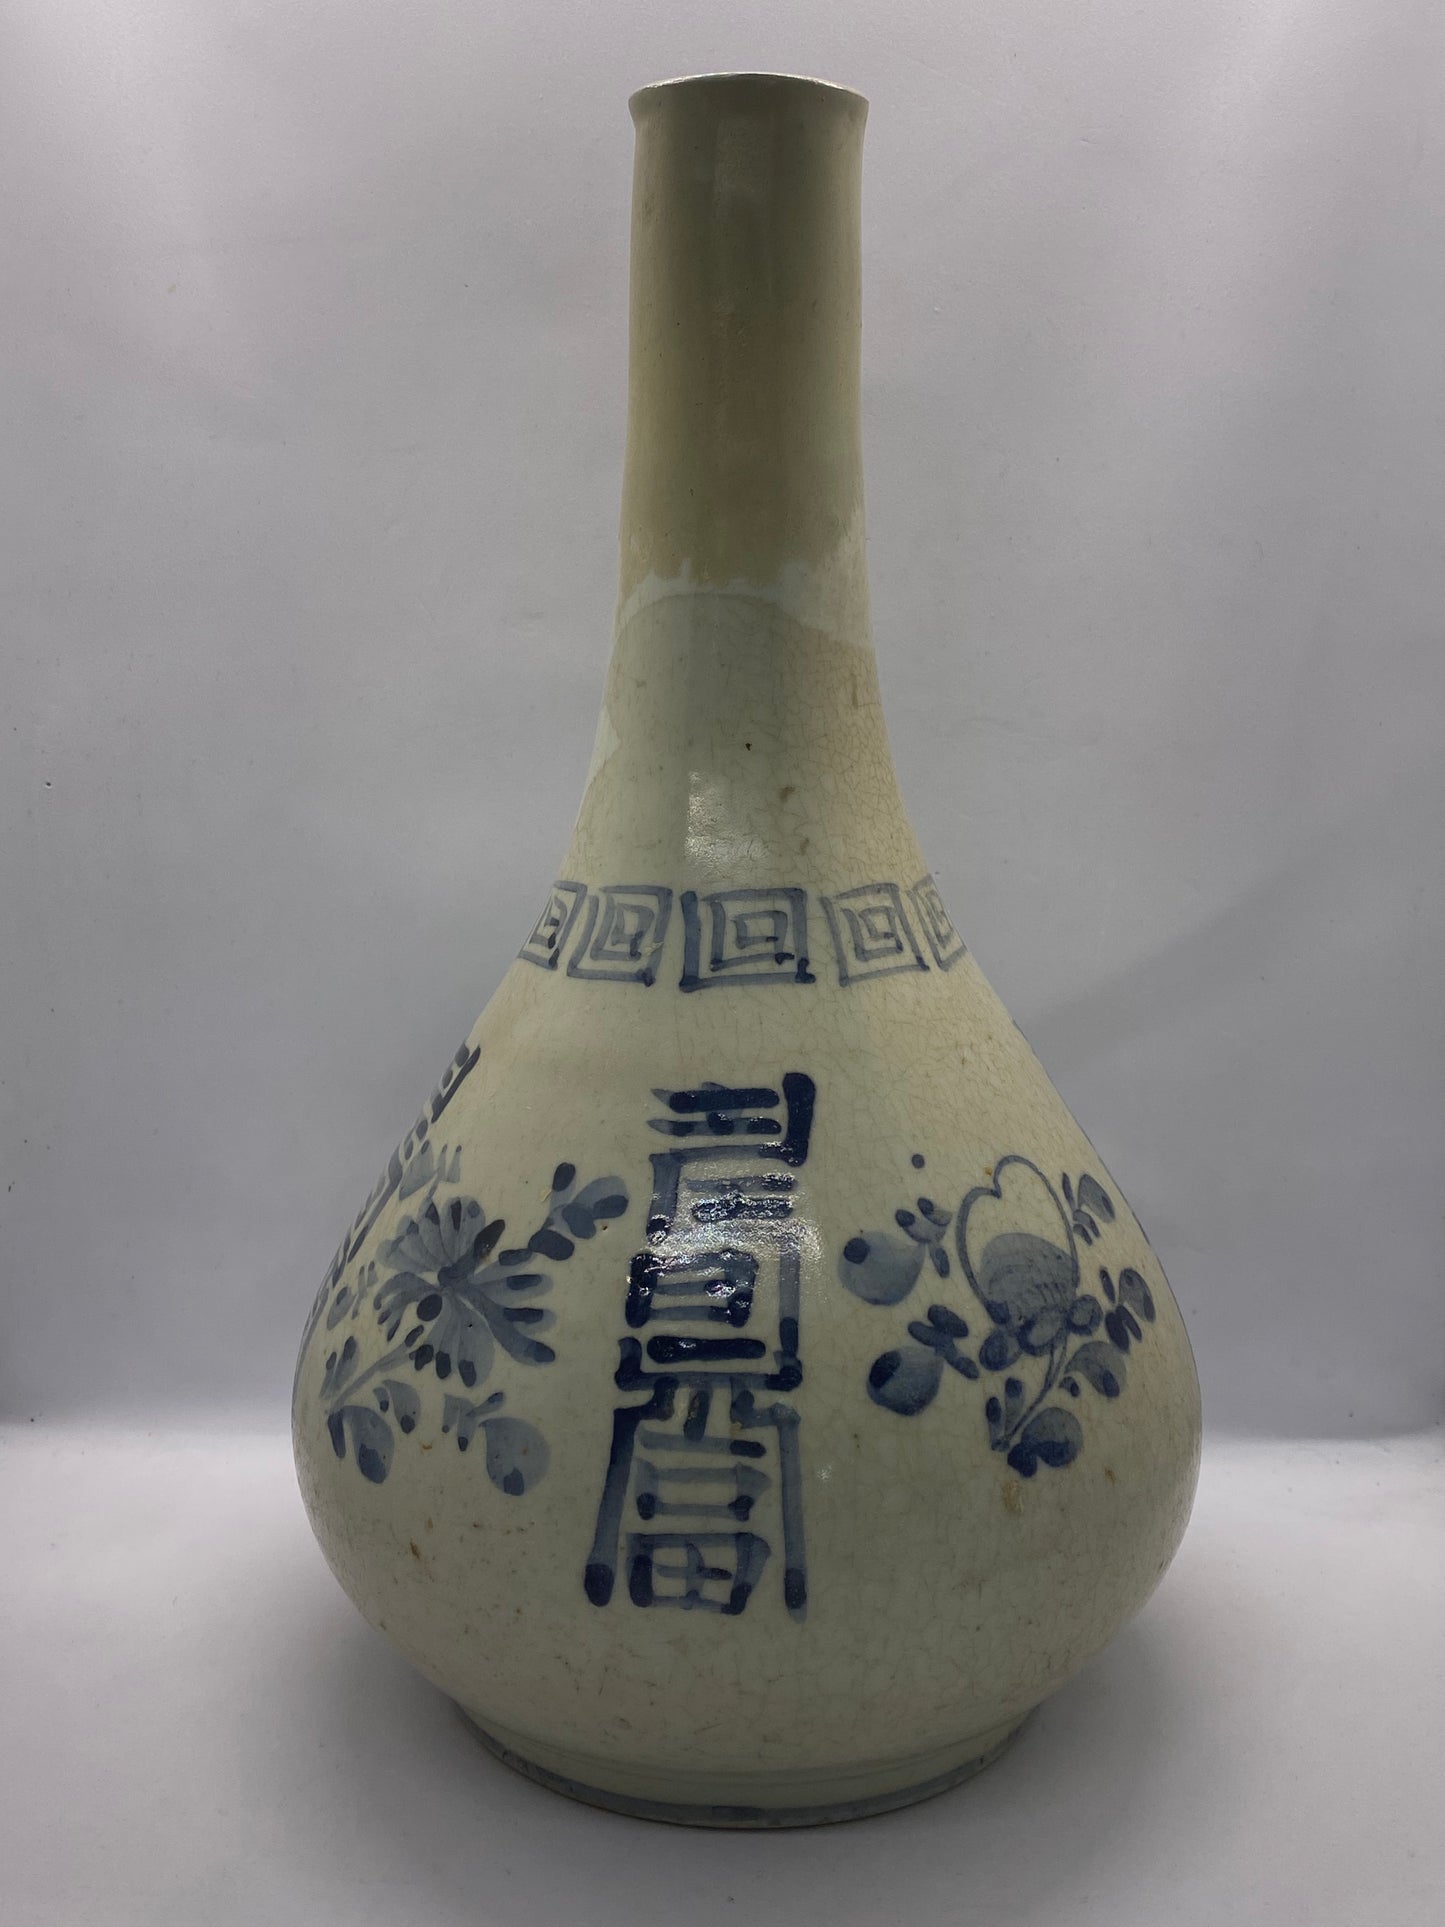 朝鲜时代晚期瓶形花瓶（十九世纪），钴釉白瓷